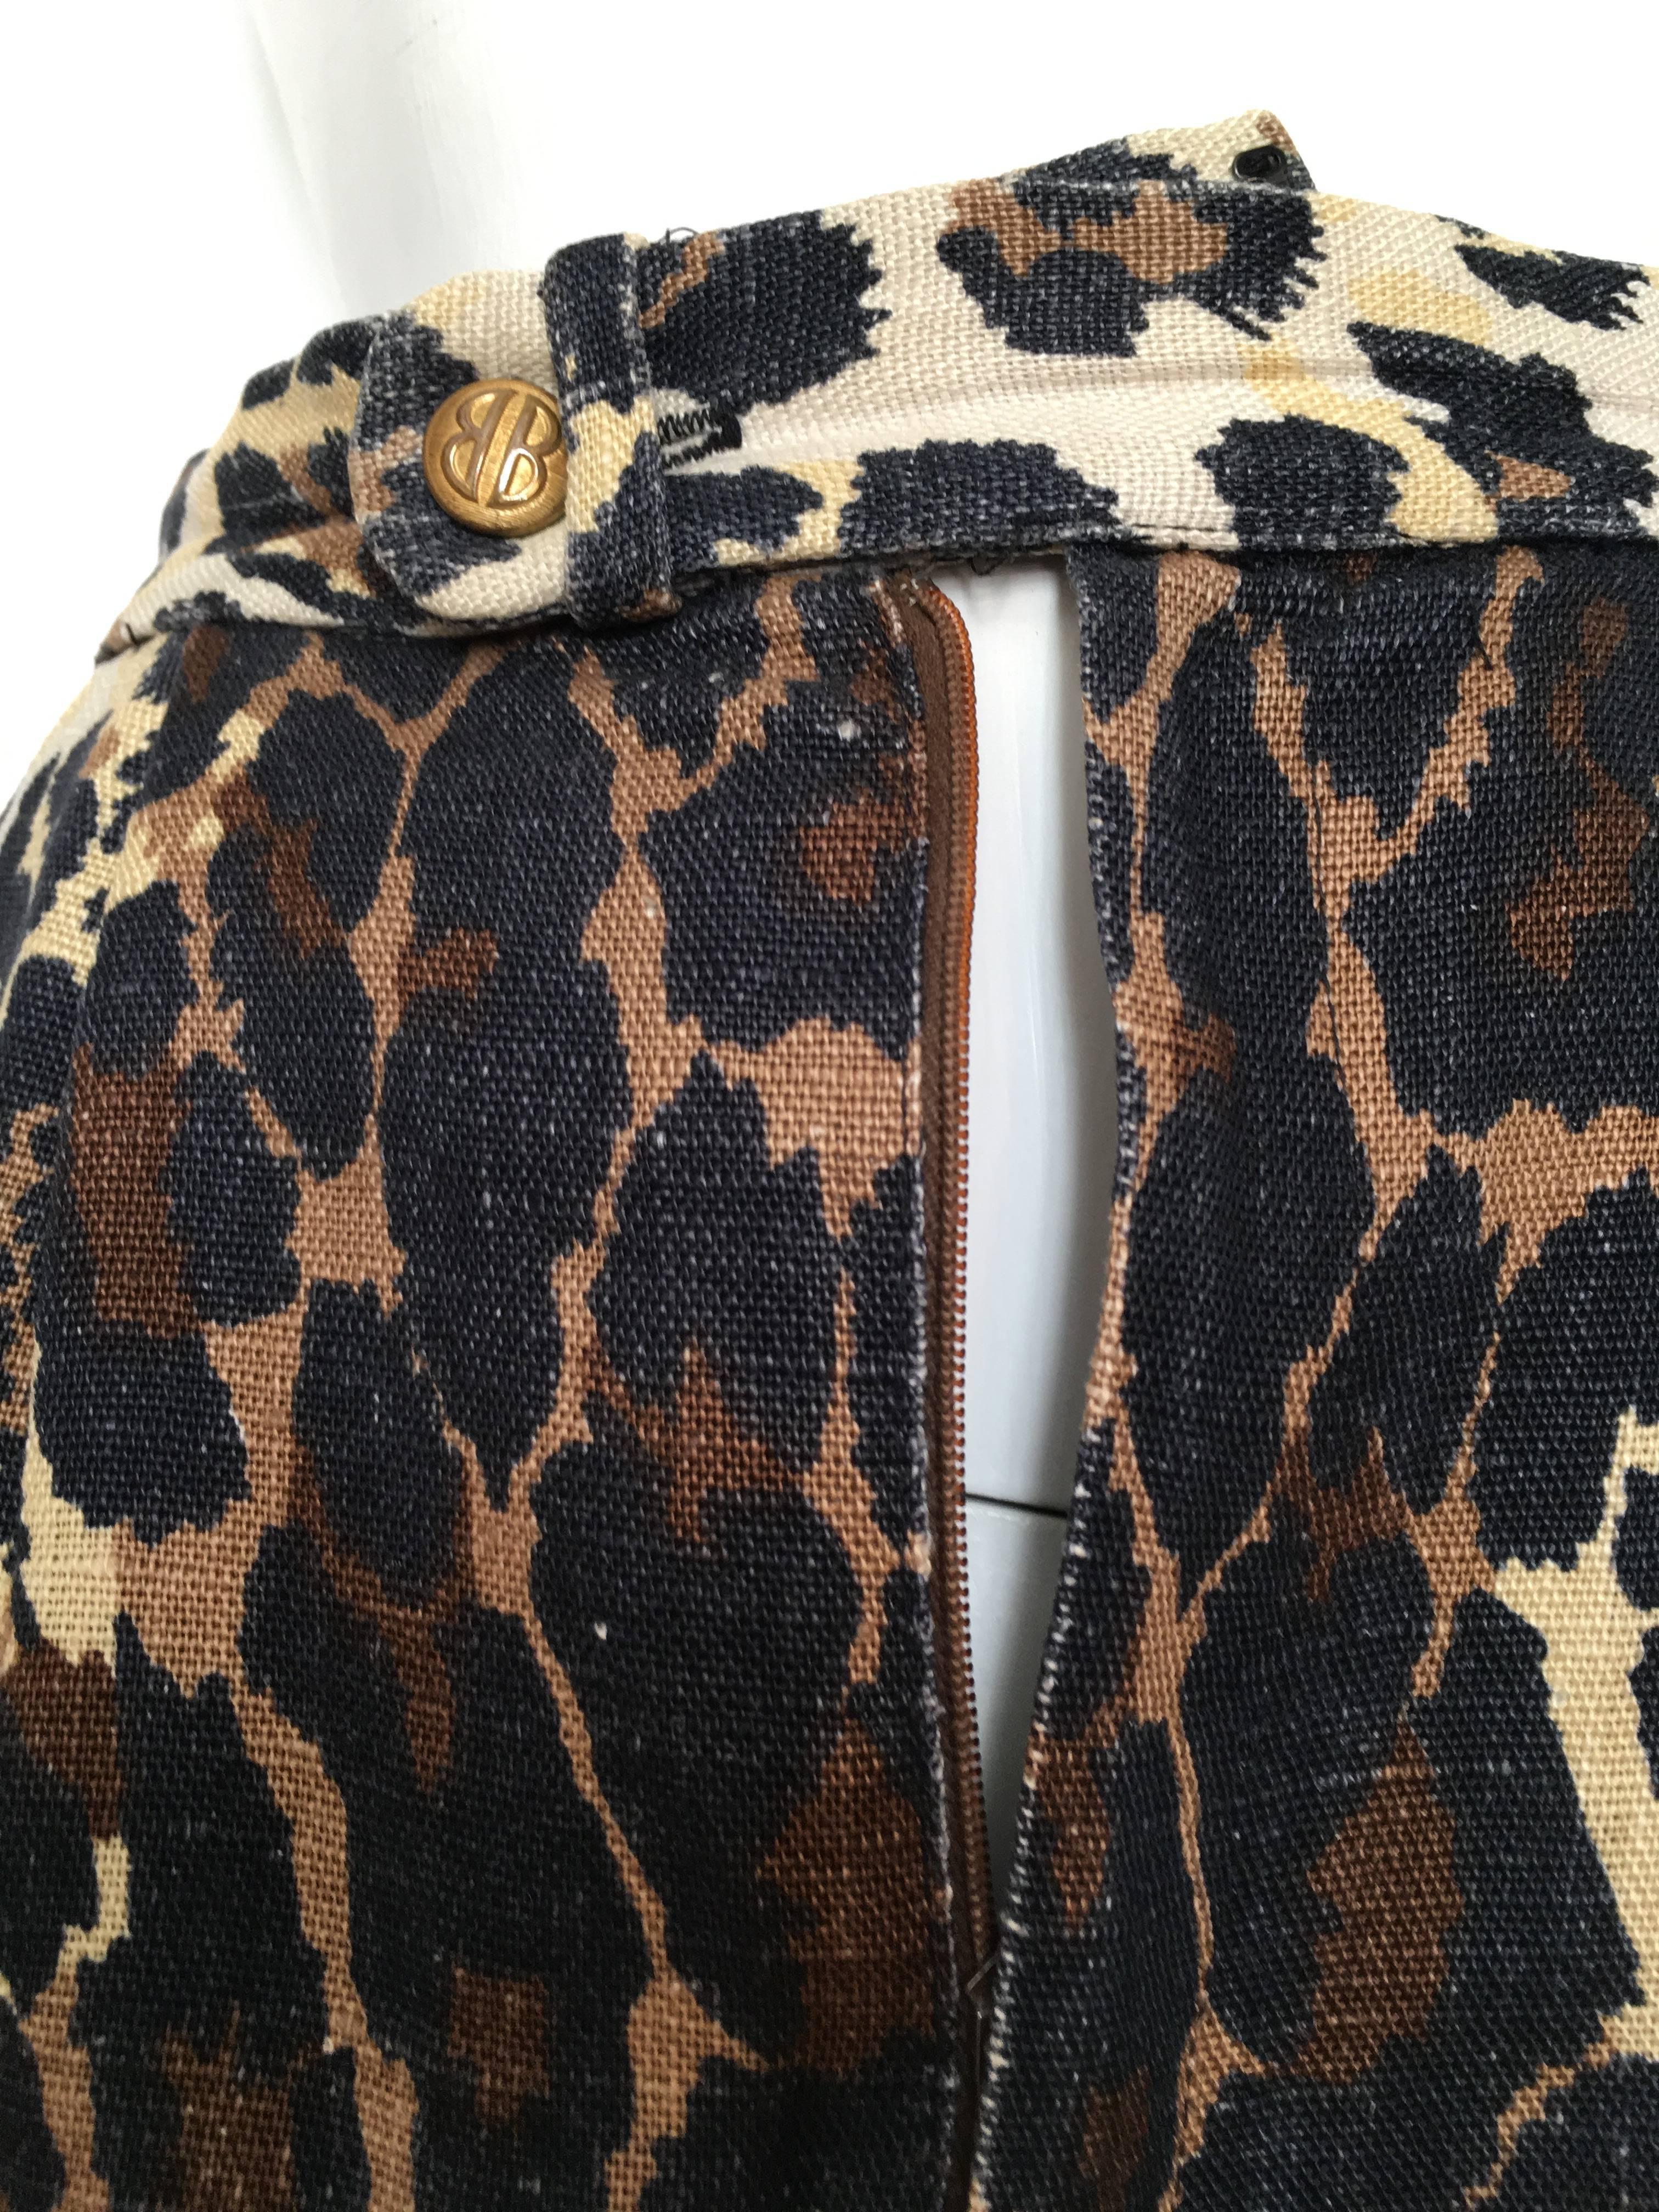 Bill Blass Linen Cheetah Print Skirt Size 4. For Sale 1